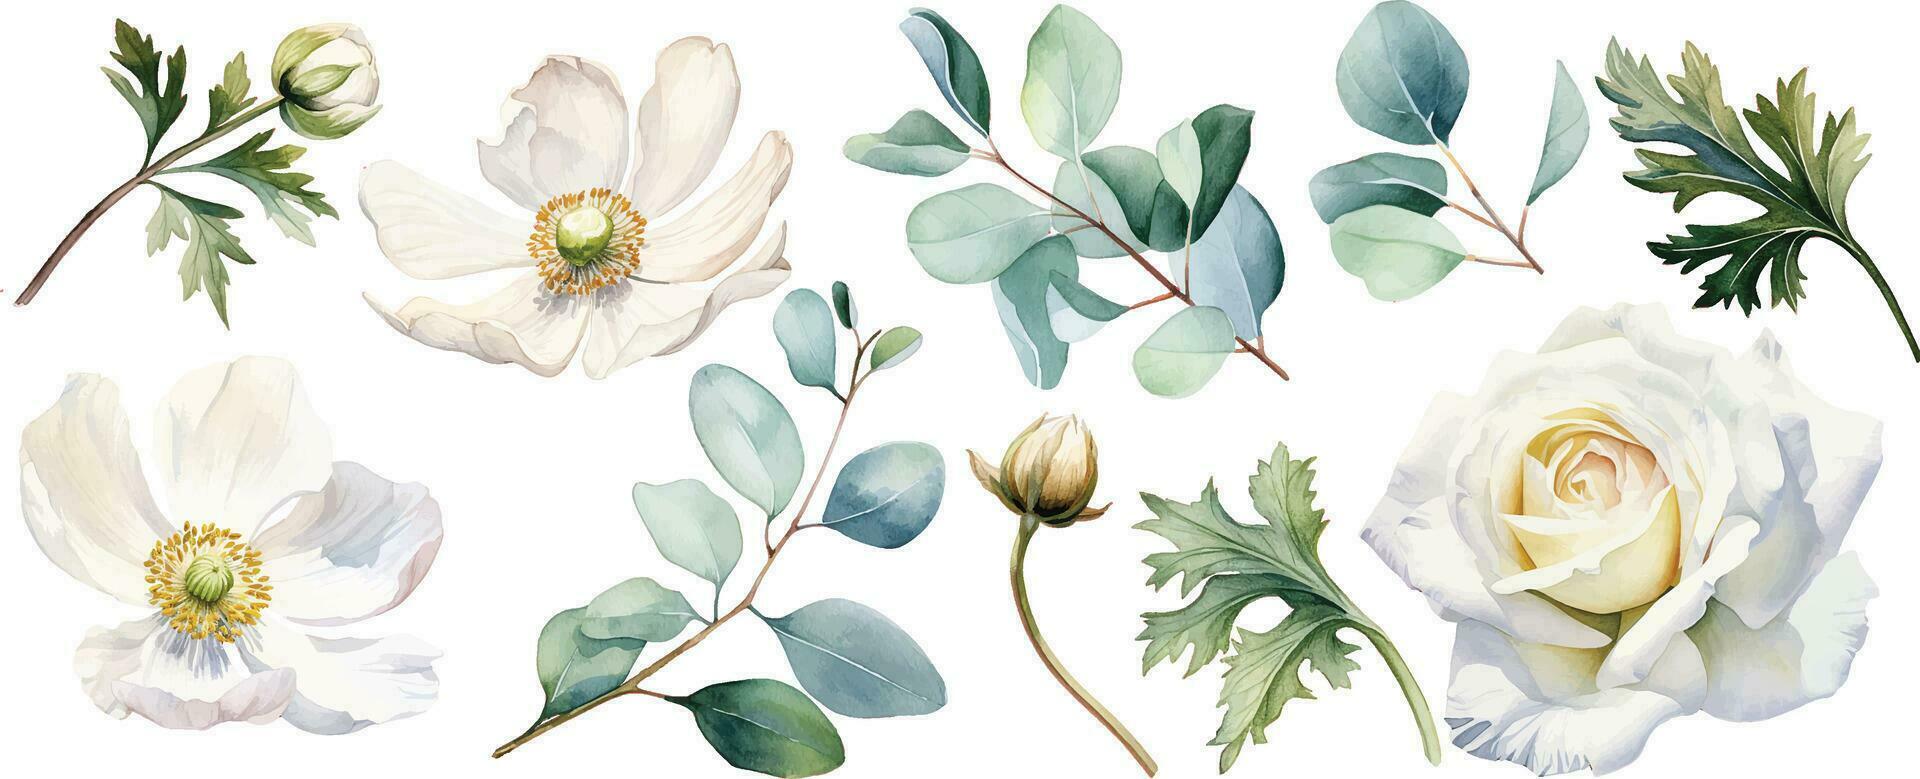 waterverf tekening, reeks van wit bloemen en groen eucalyptus bladeren. bloemen en bloemknoppen van rozen, klaprozen, anemonen vector